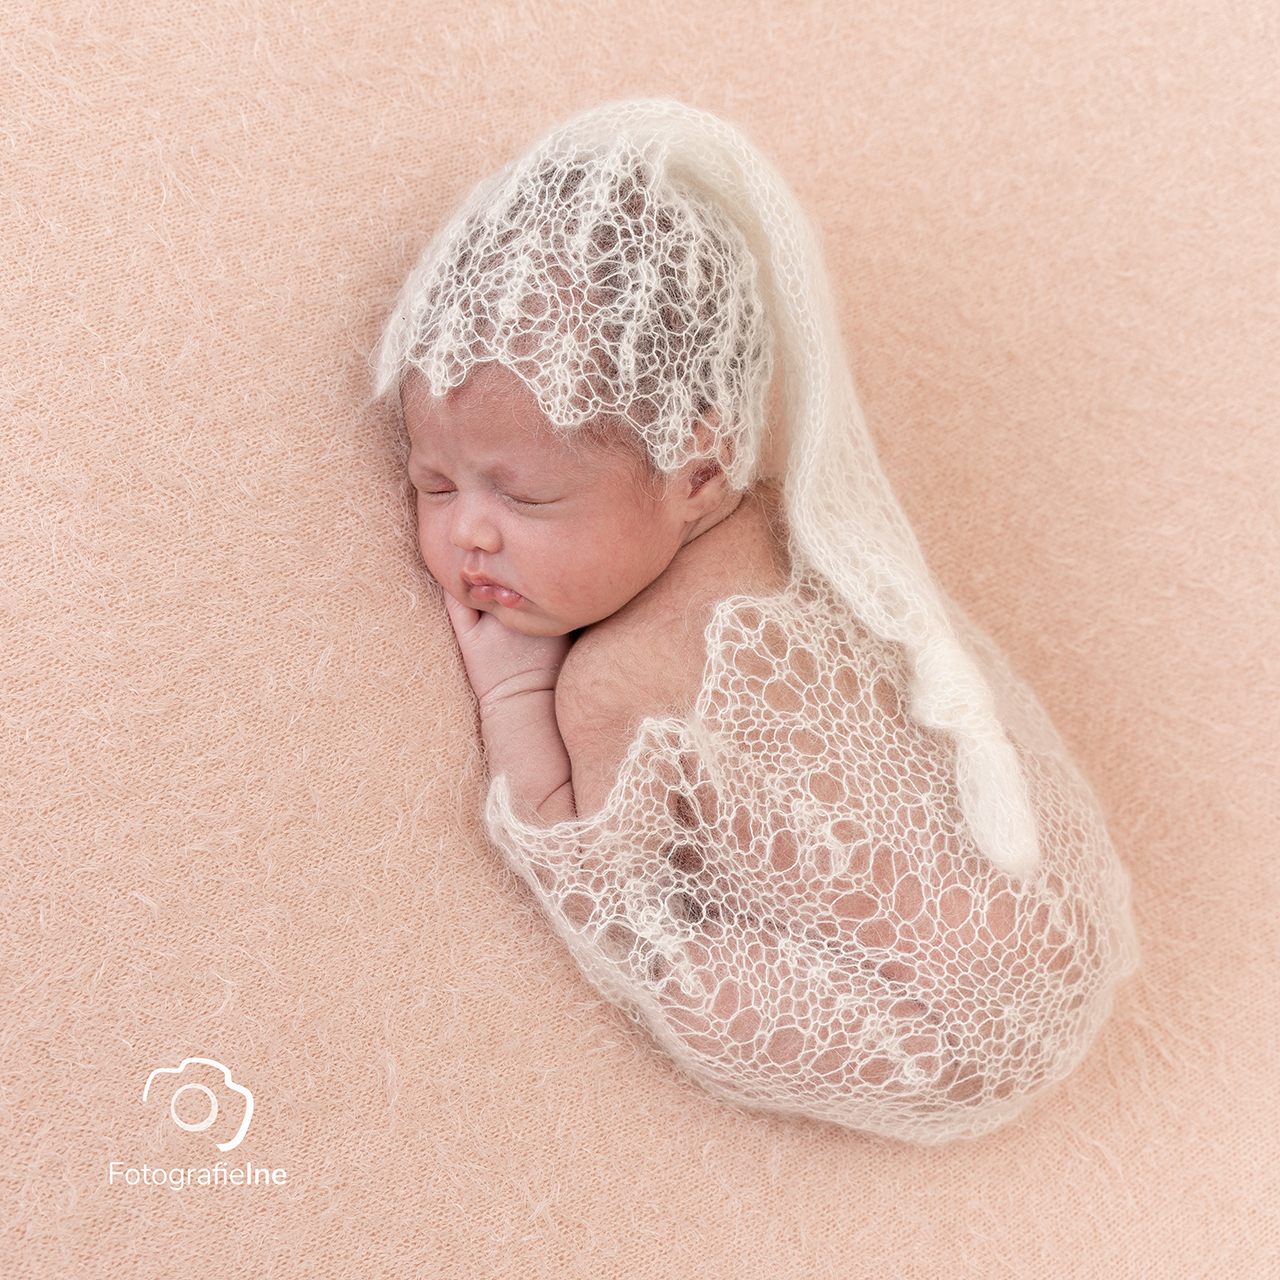 Fotografie ine newborn fotoshoot oud roze met mutsje en wrap – Fotograaf Boekel meisje newborn